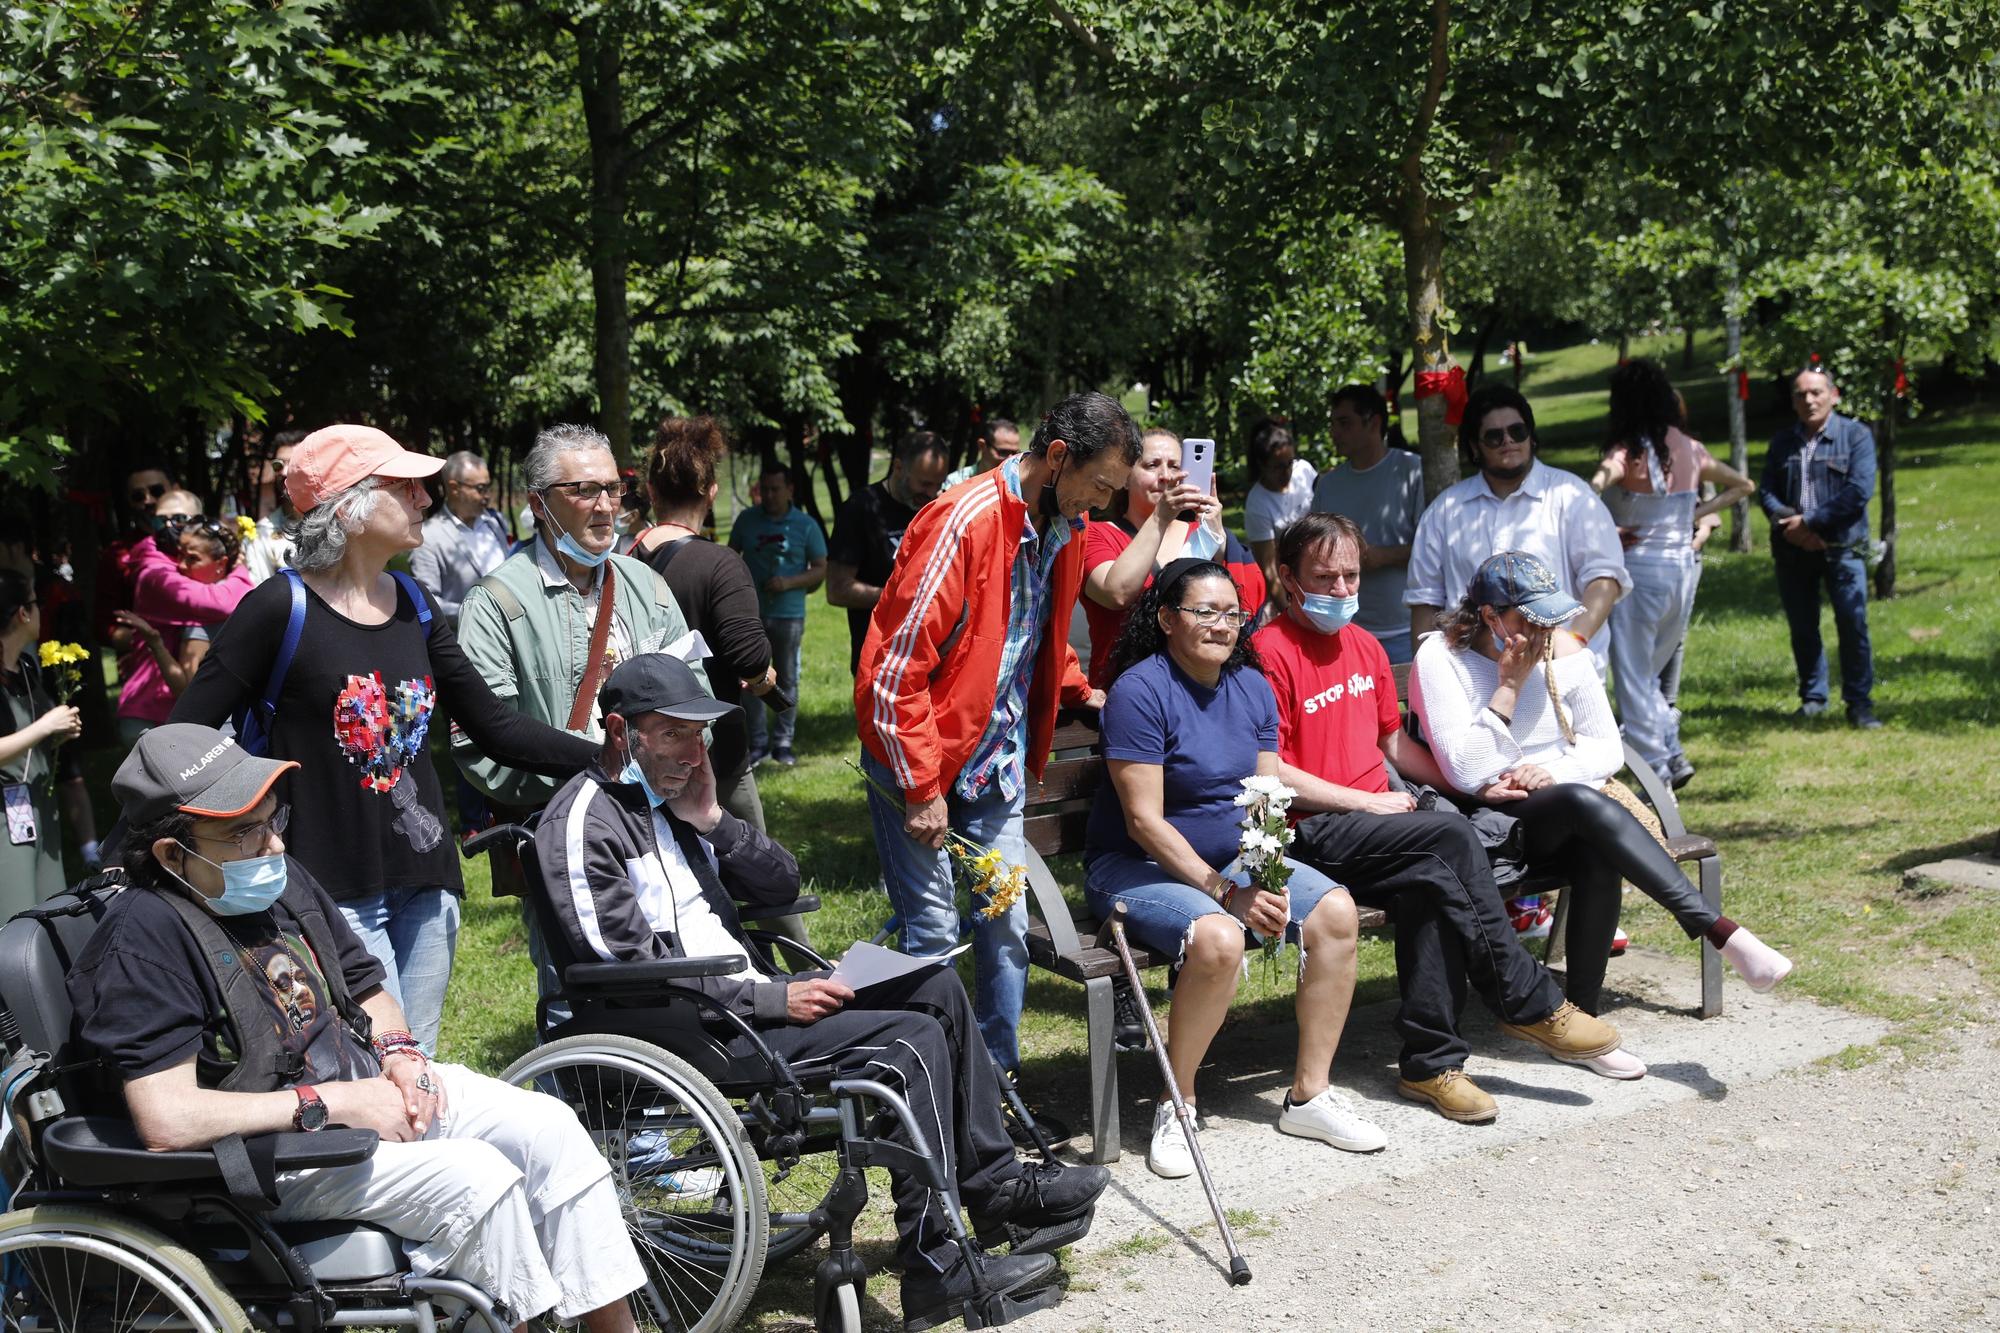 En imágenes: Memorial del sida en el Bosque de la Memoria, en el parque de Los Pericones